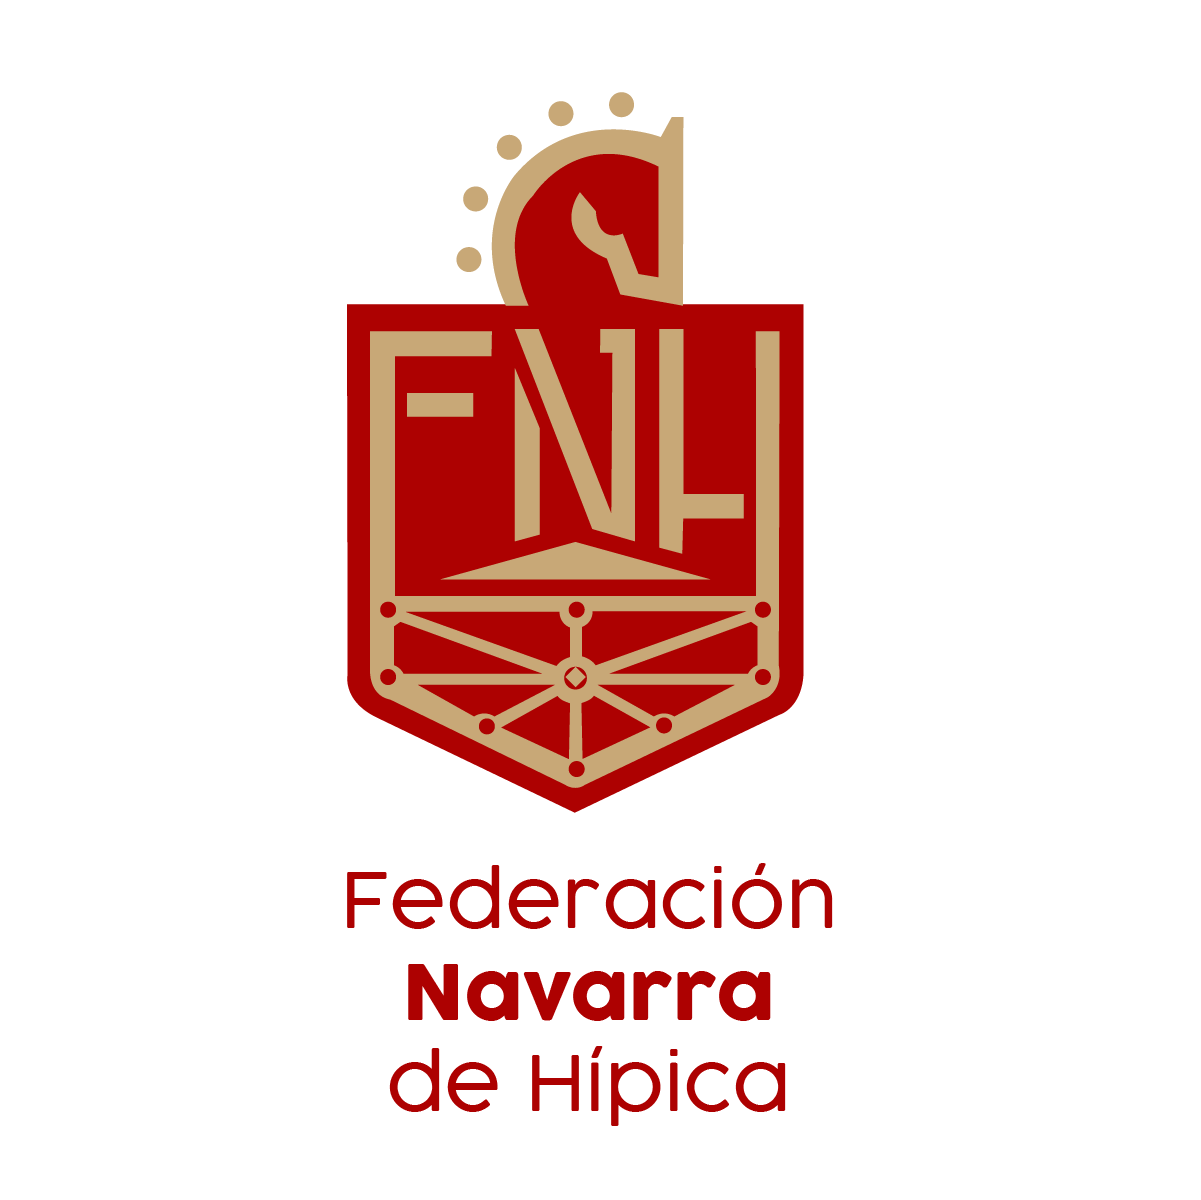 Gala de la Federación Navarra de Hípica Hotel Tres Reyes 18 de Enero